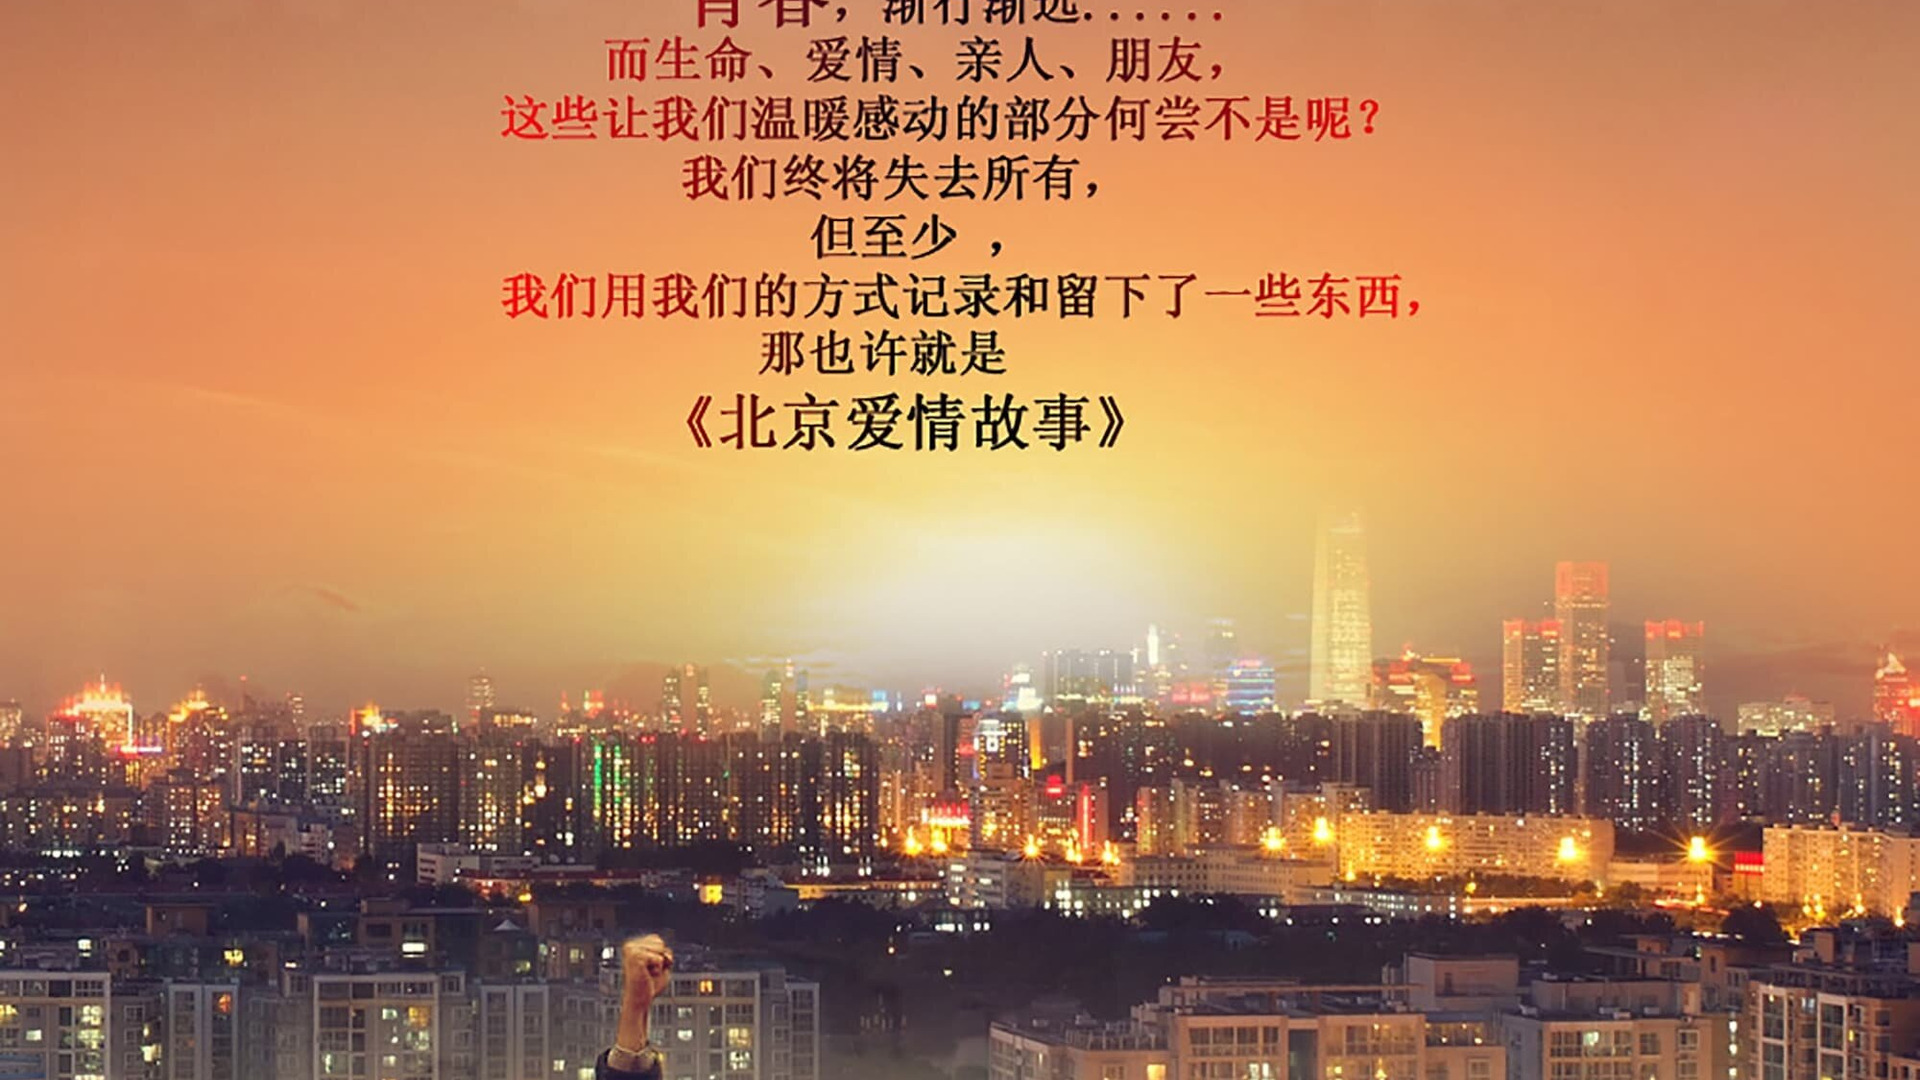 Show Beijing Love Story